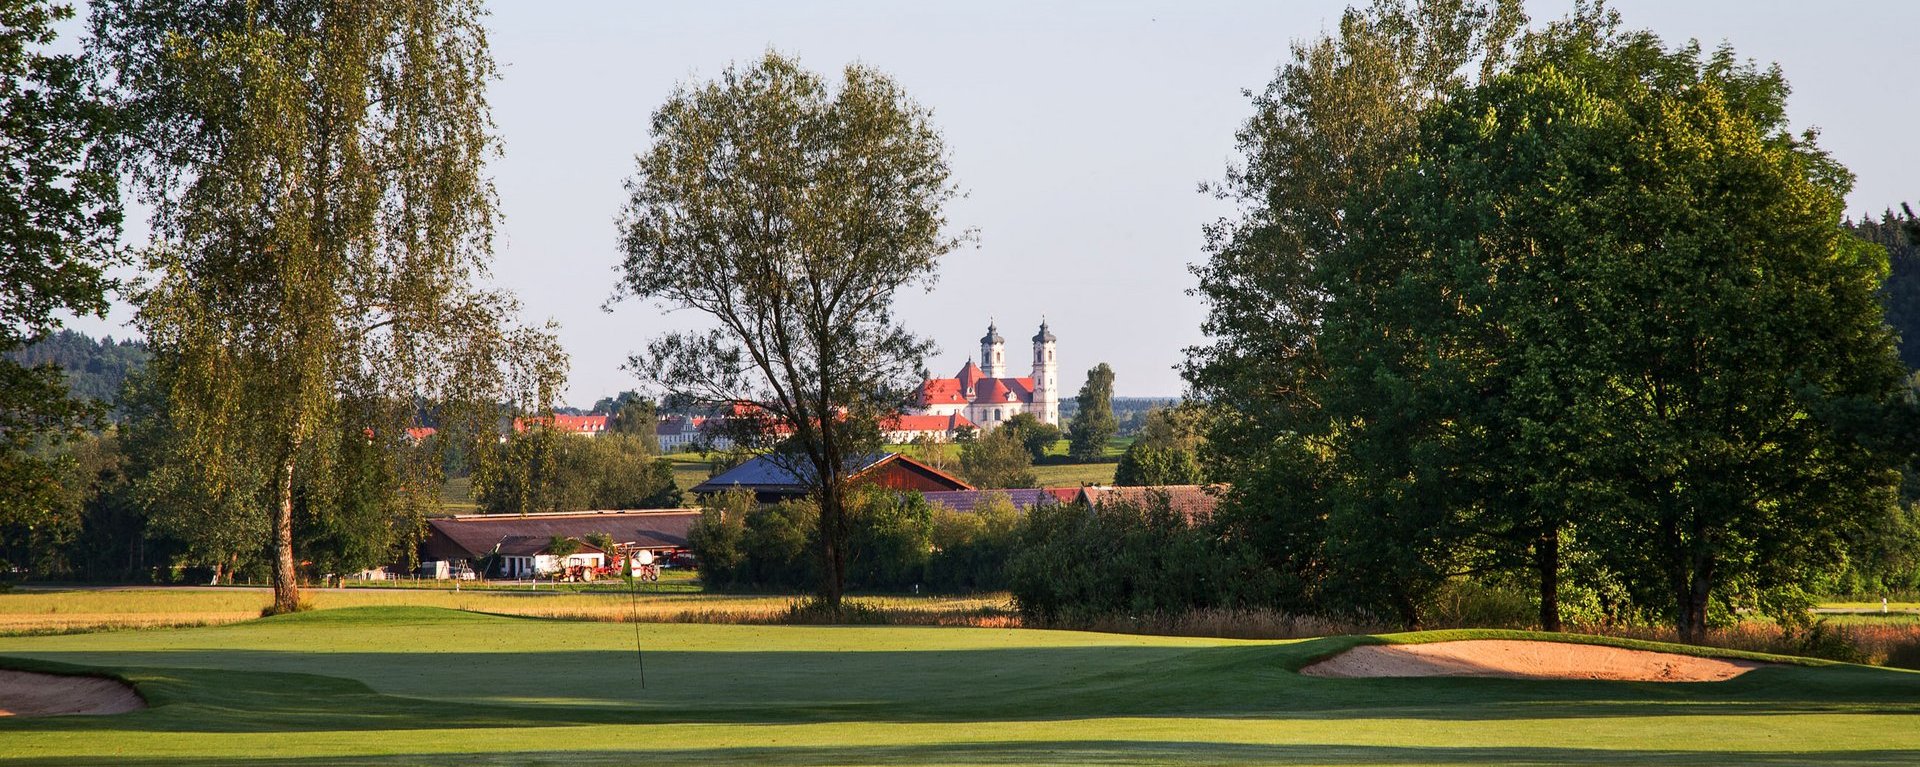 Das Grün der Golfbahn 03 auf der Golfanlage Allgäuer Golf- und Landclub e.V. Ottobeuren mit der Basilika im Hintergrund